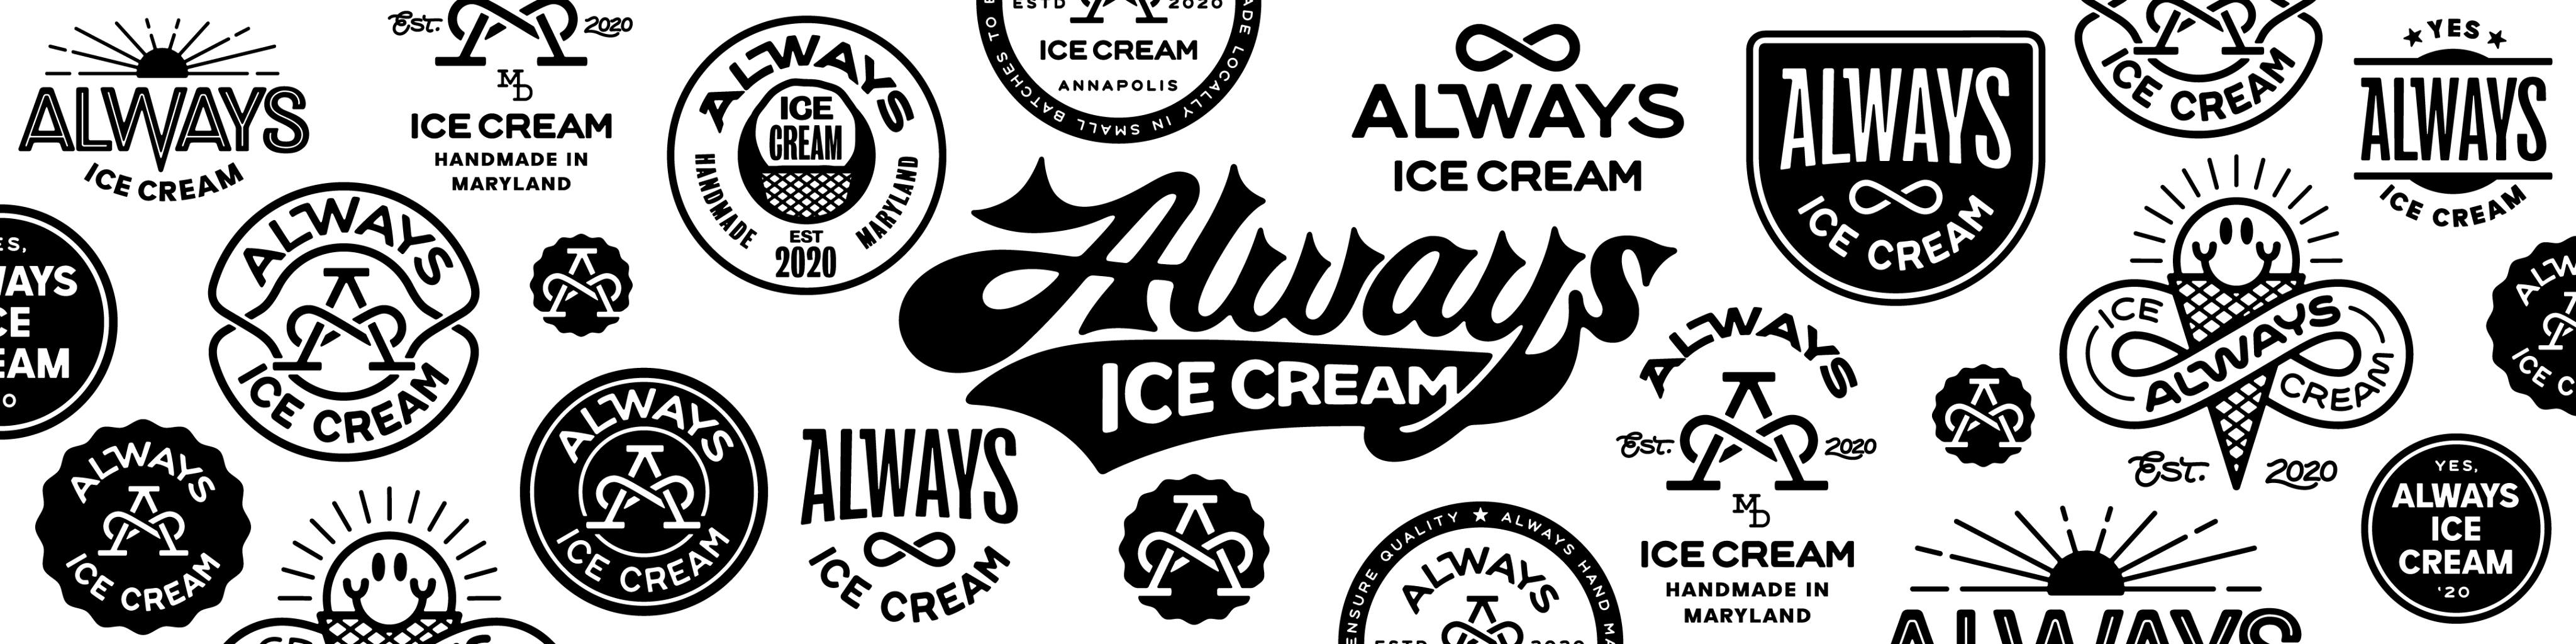 Always Ice Cream Logos